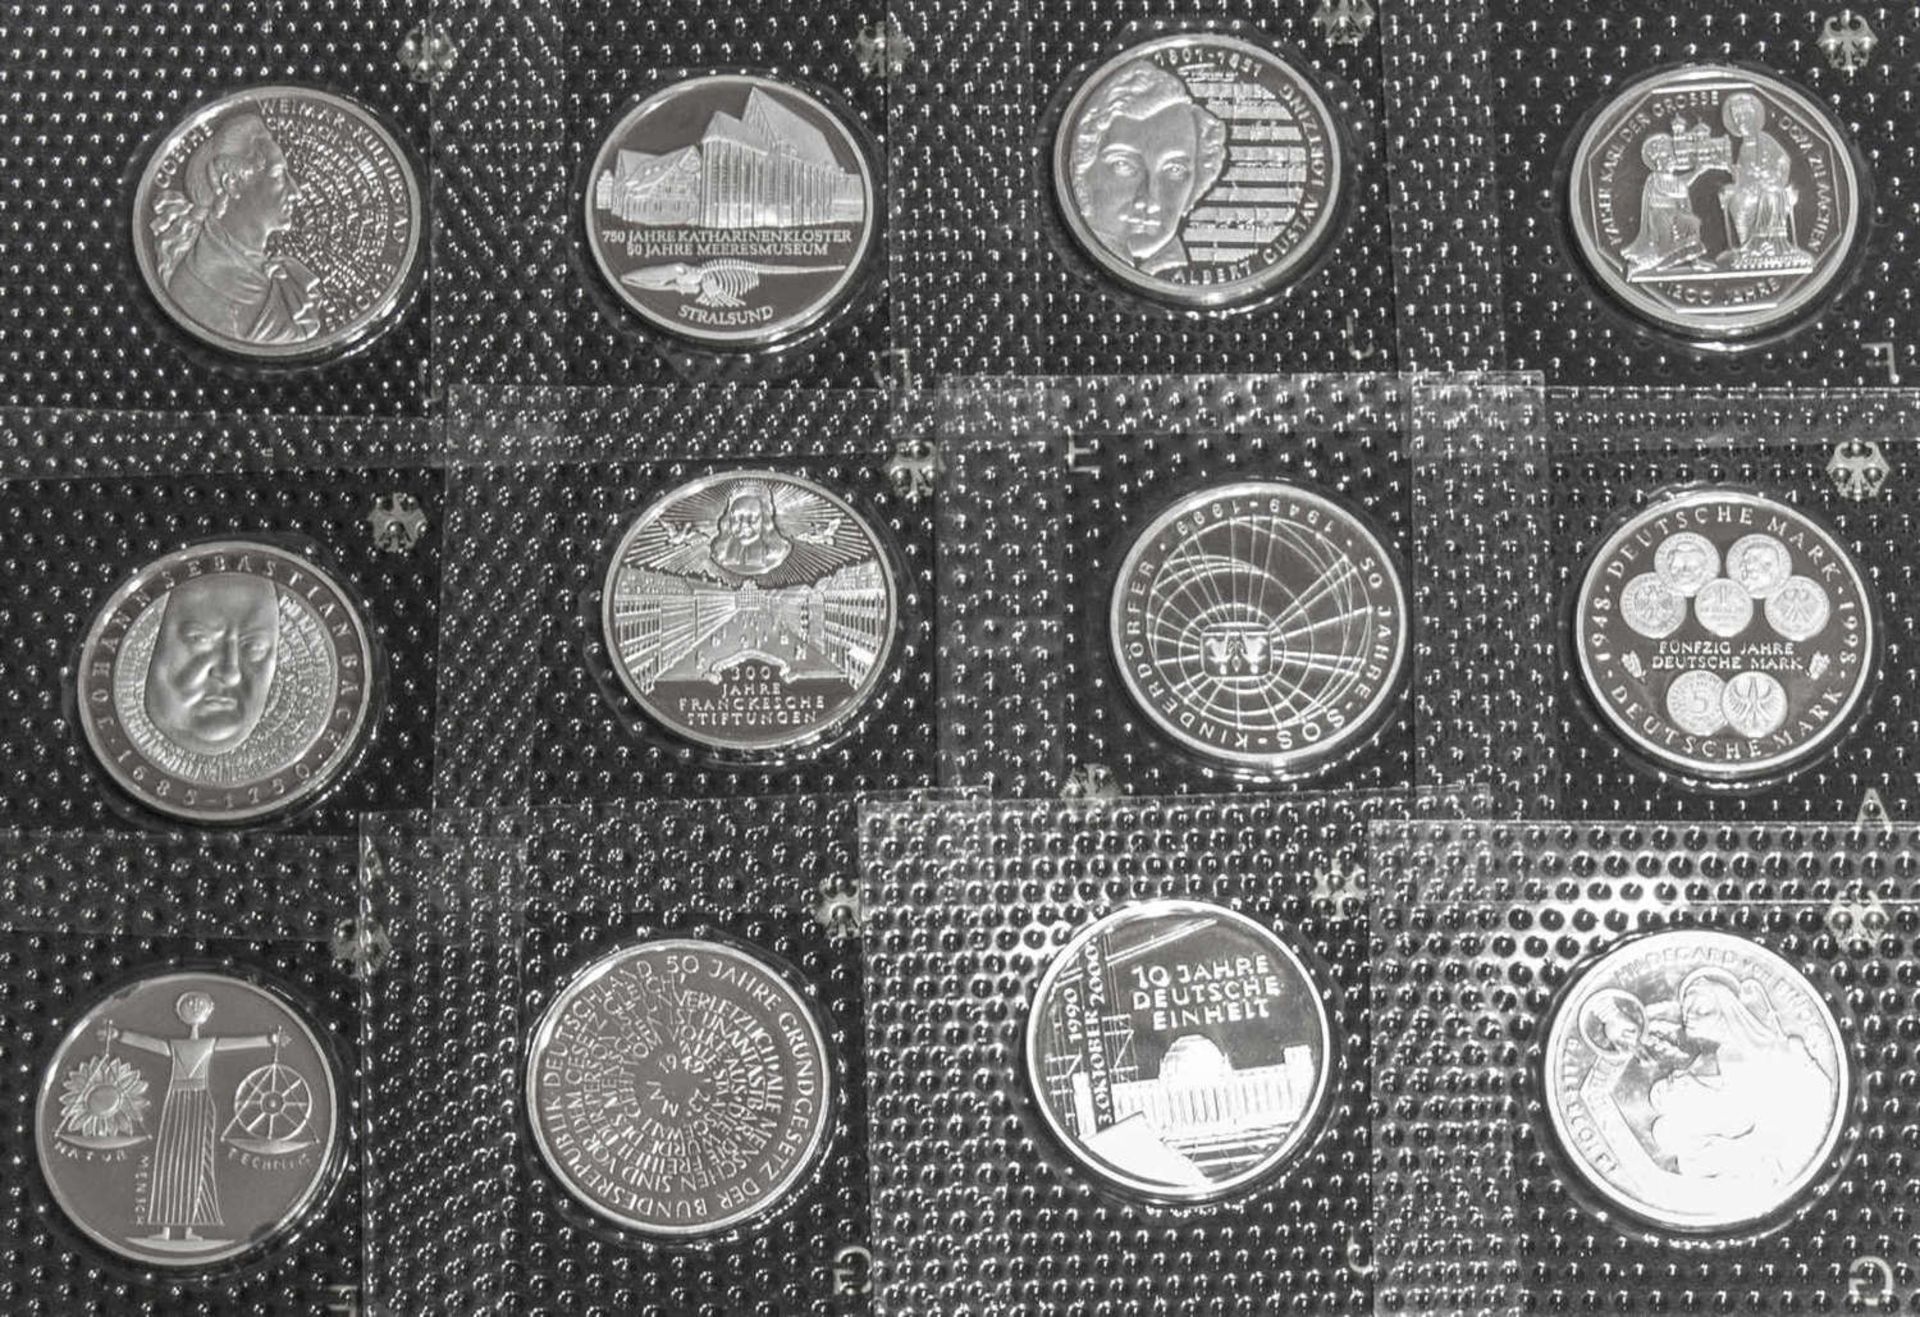 Deutschland 1998 - 2001, Sammlung 10.- DM - Silbermünzen. Insgesamt 12 Stück. In Noppenfolie.